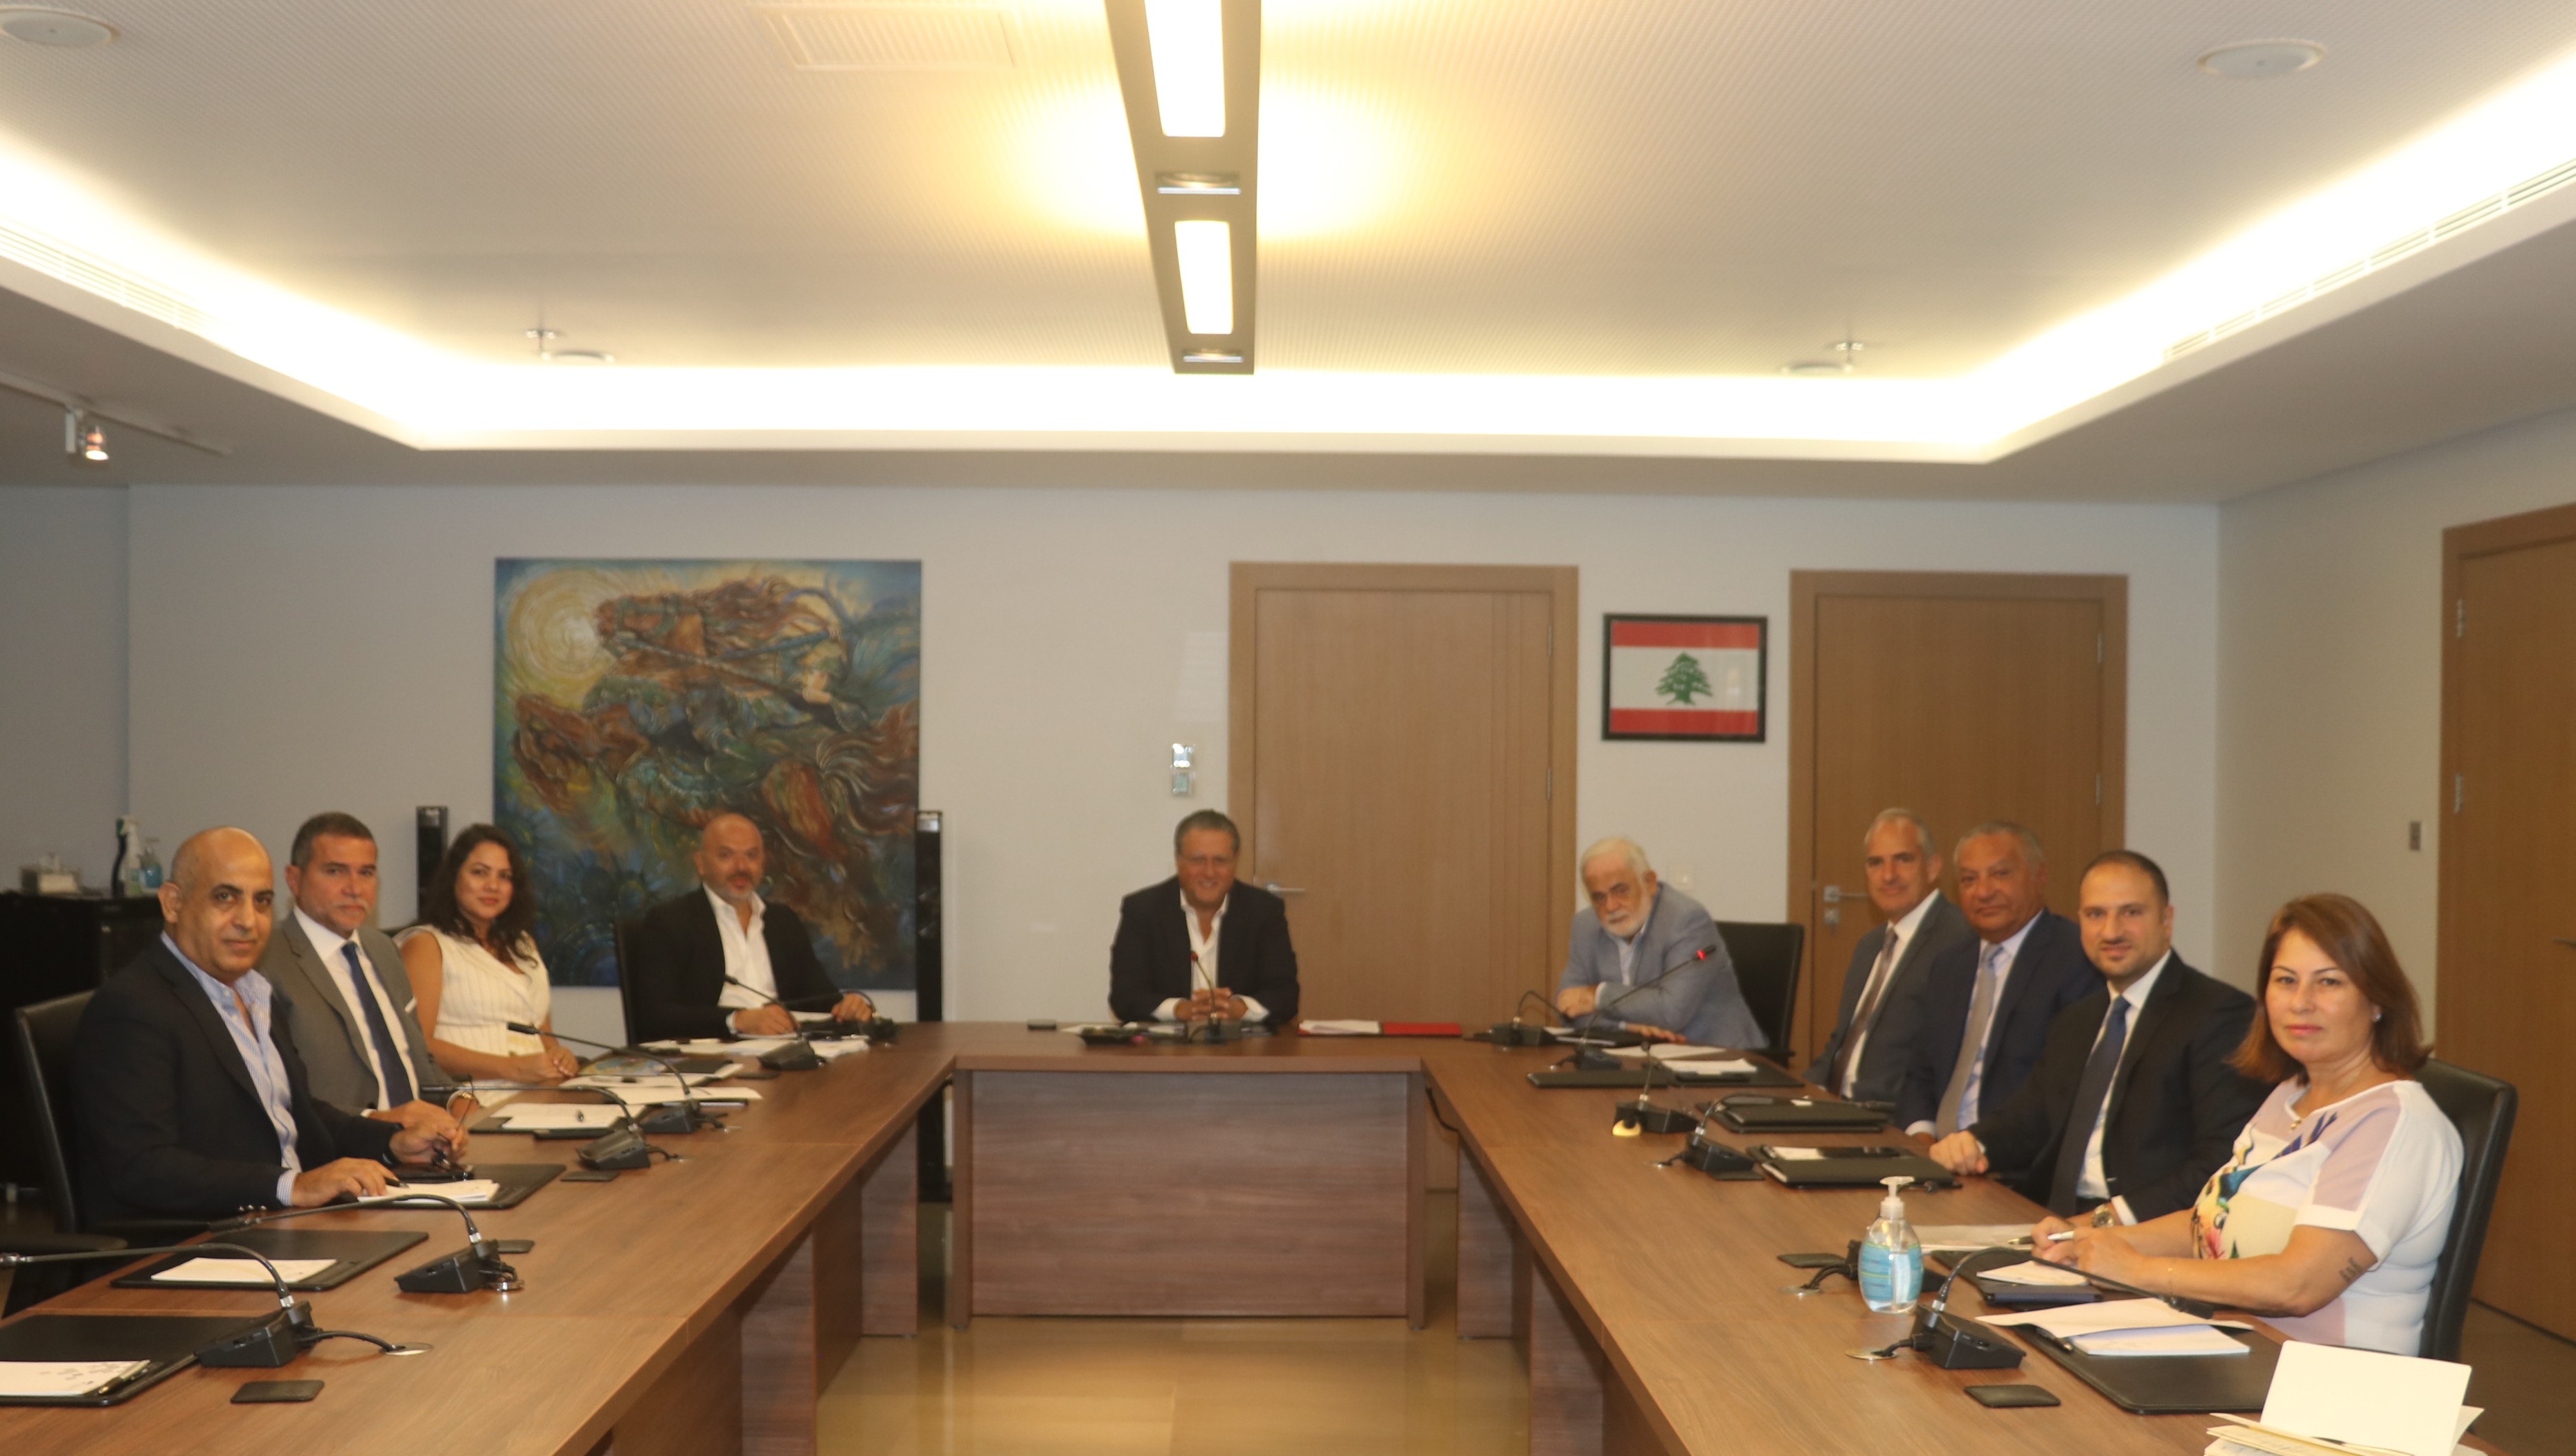 شقير يطلق مجلس الأعمال اللبناني- انتيغوا وباربودا